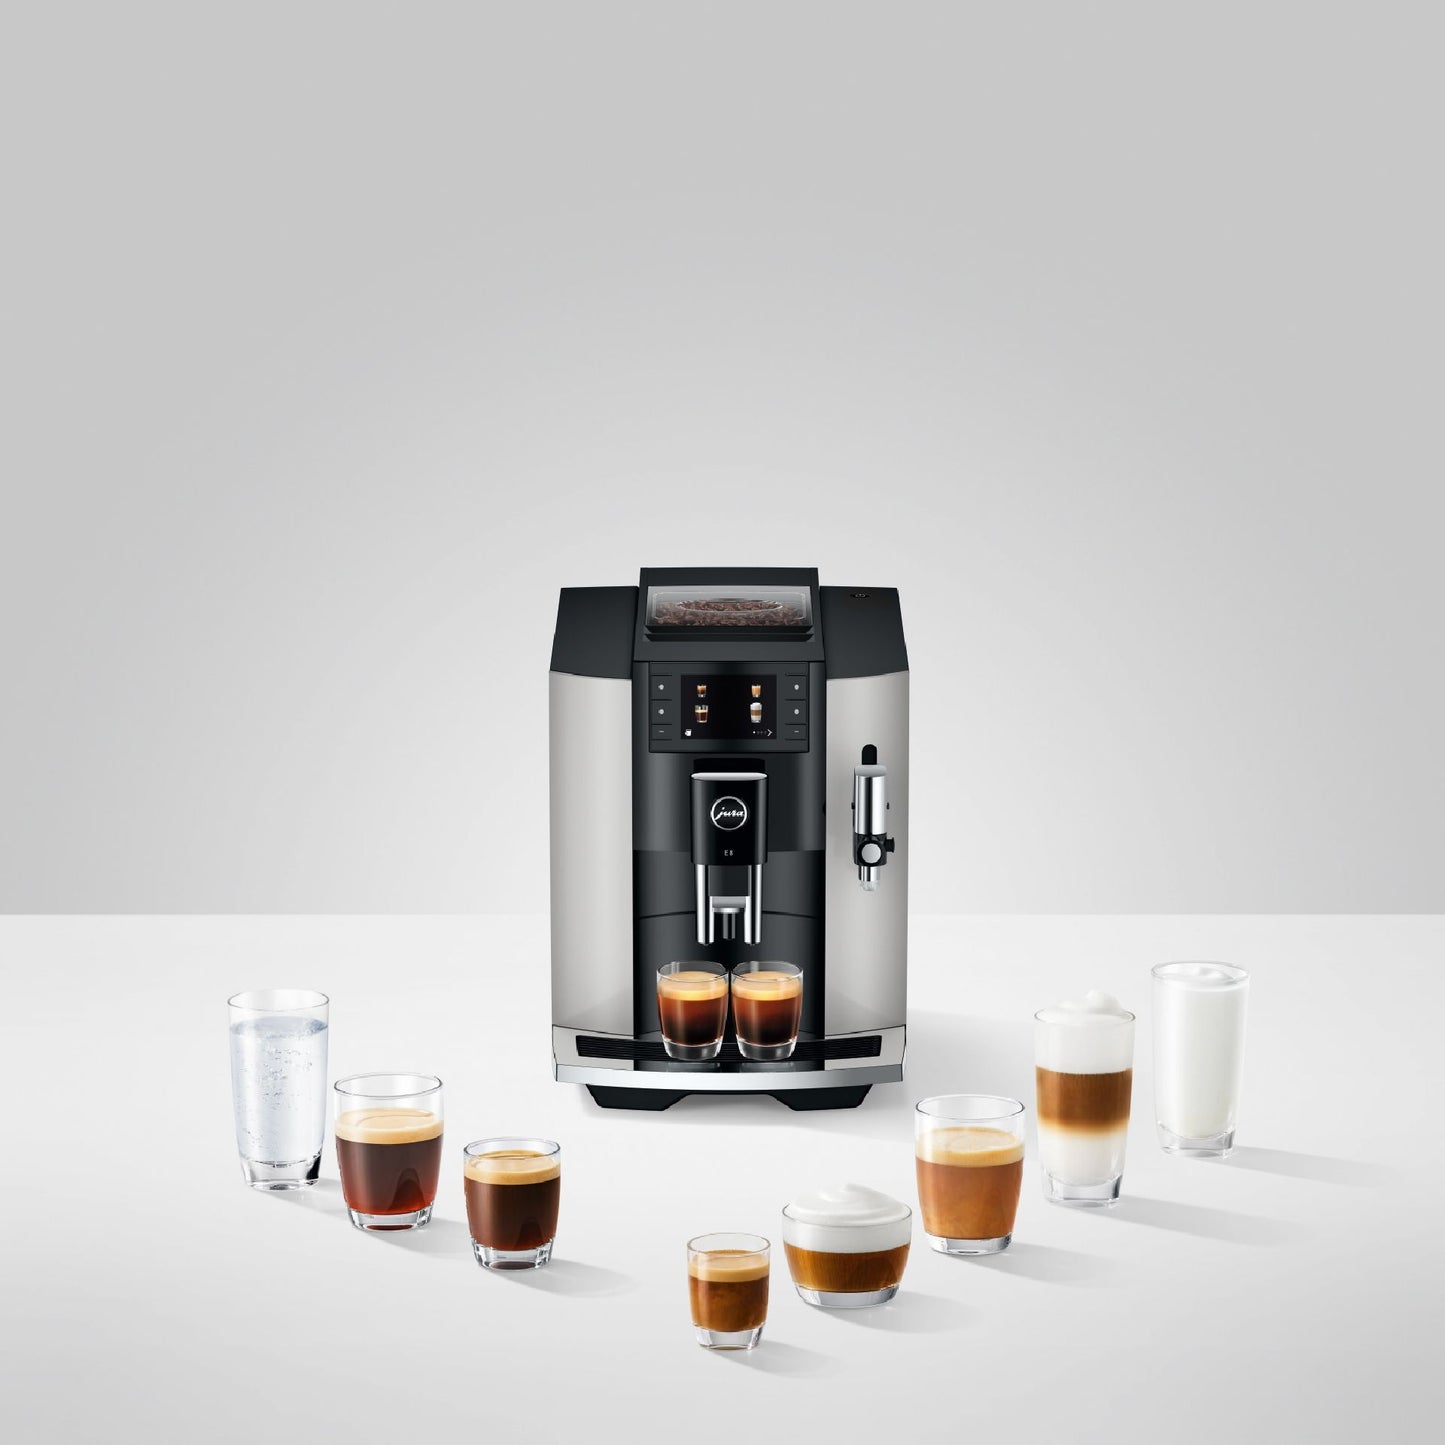 Jura-E8 Platin-Kaffeevollautomaten-Beutelschmidt